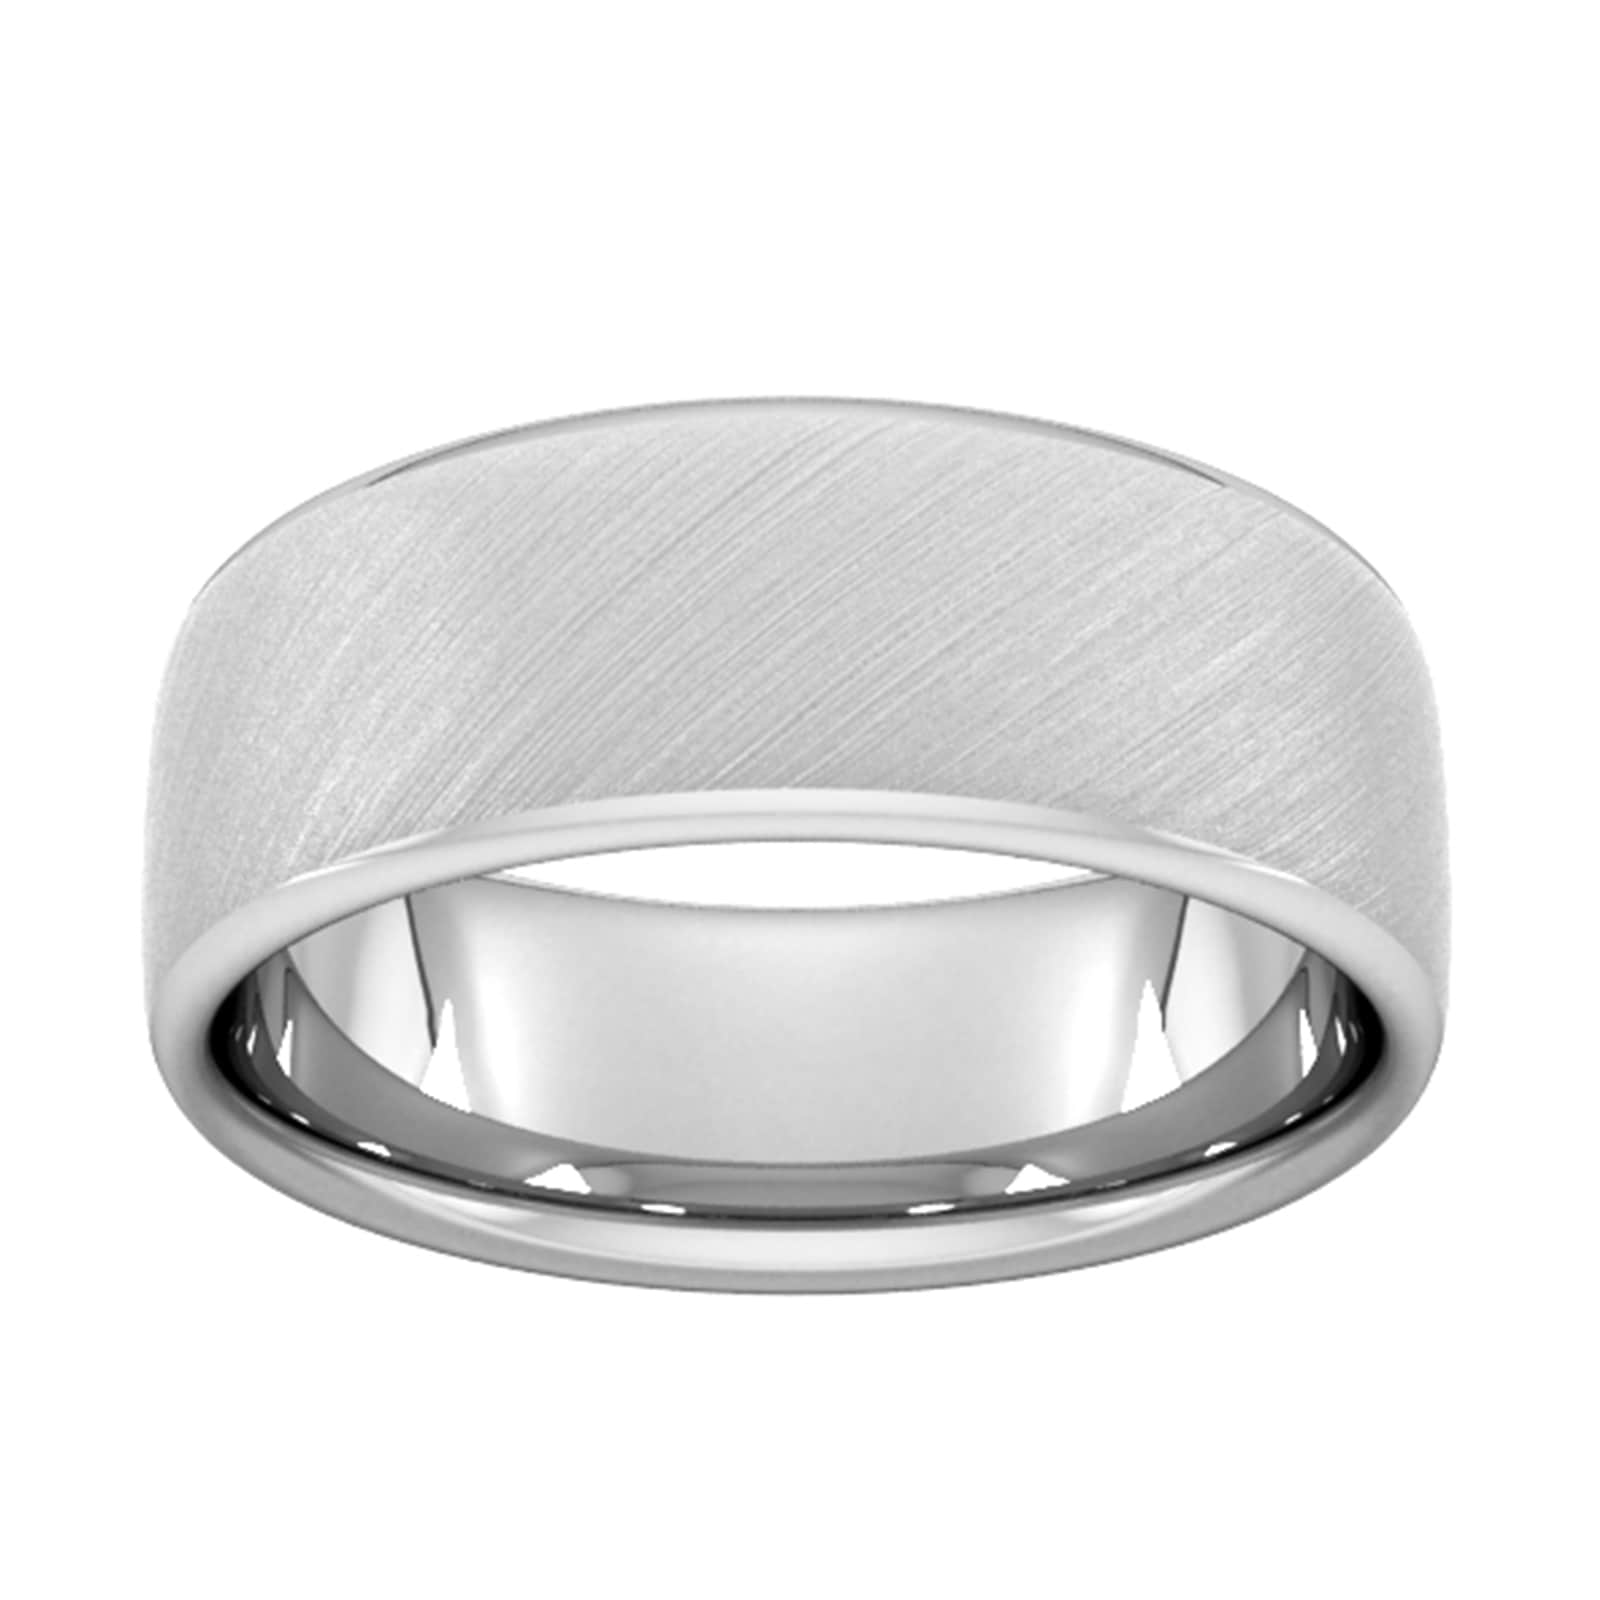 8mm Slight Court Standard Diagonal Matt Finish Wedding Ring In 950 Palladium - Ring Size X